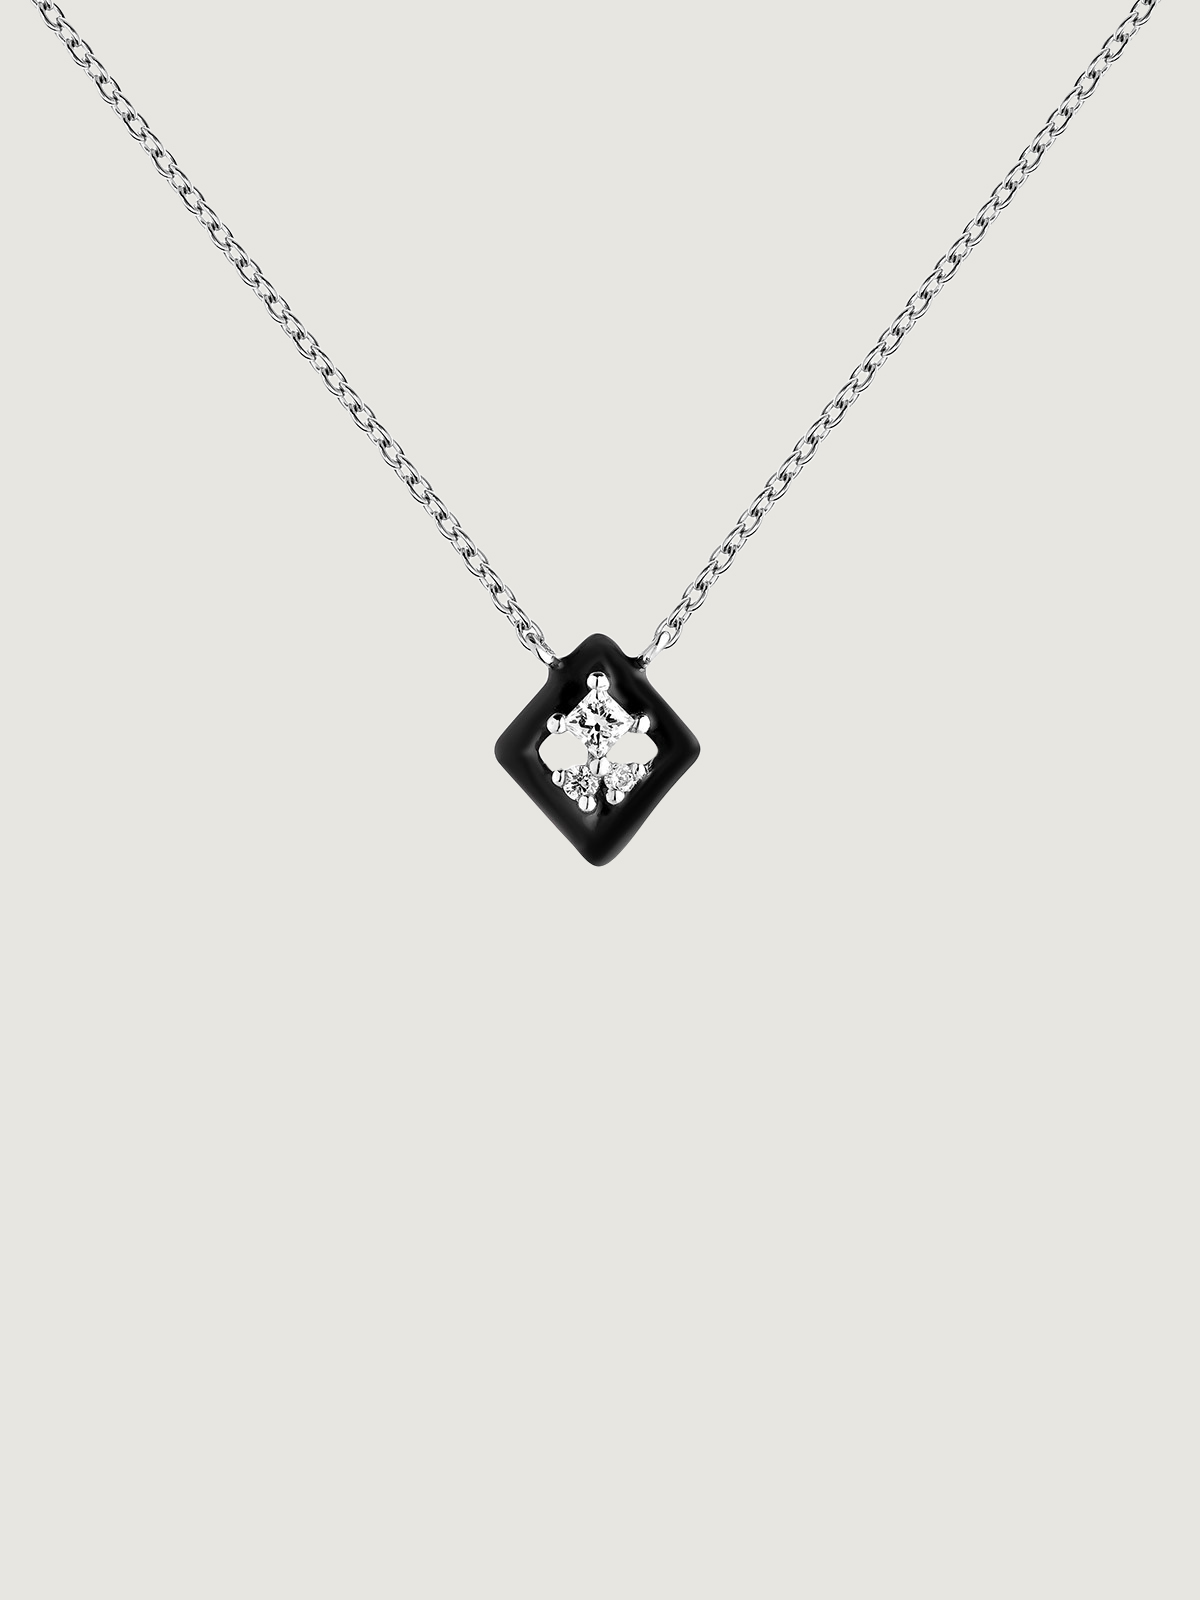 18K white gold pendant with black enamel and diamond.